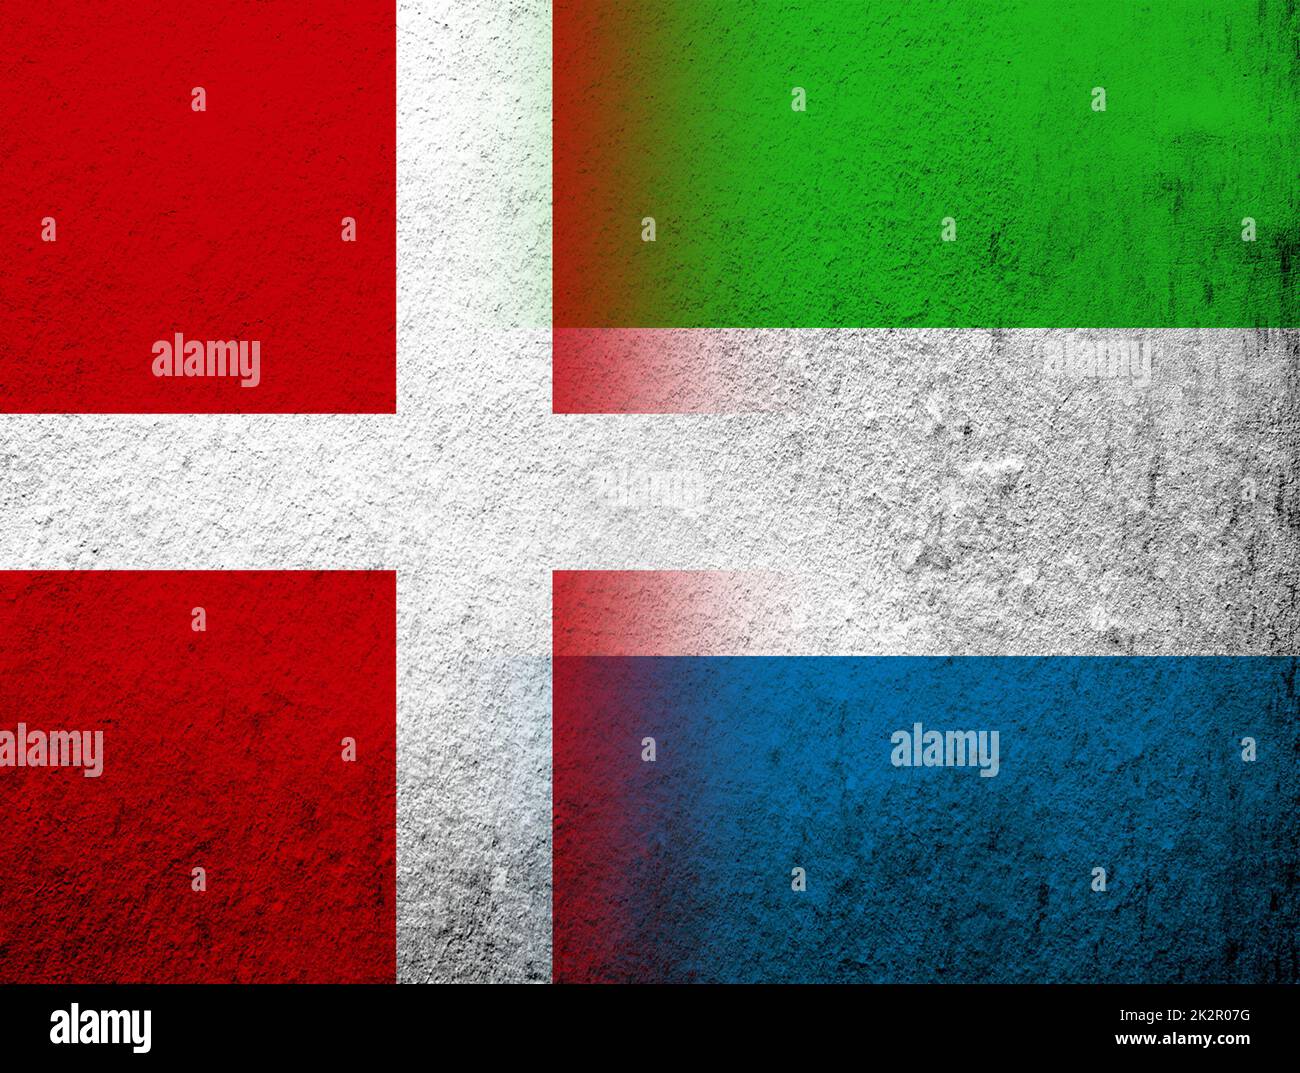 Das Königreich Dänemark Nationalflagge mit der Republik Sierra Leone Salone Nationalflagge. Grunge Hintergrund Stockfoto